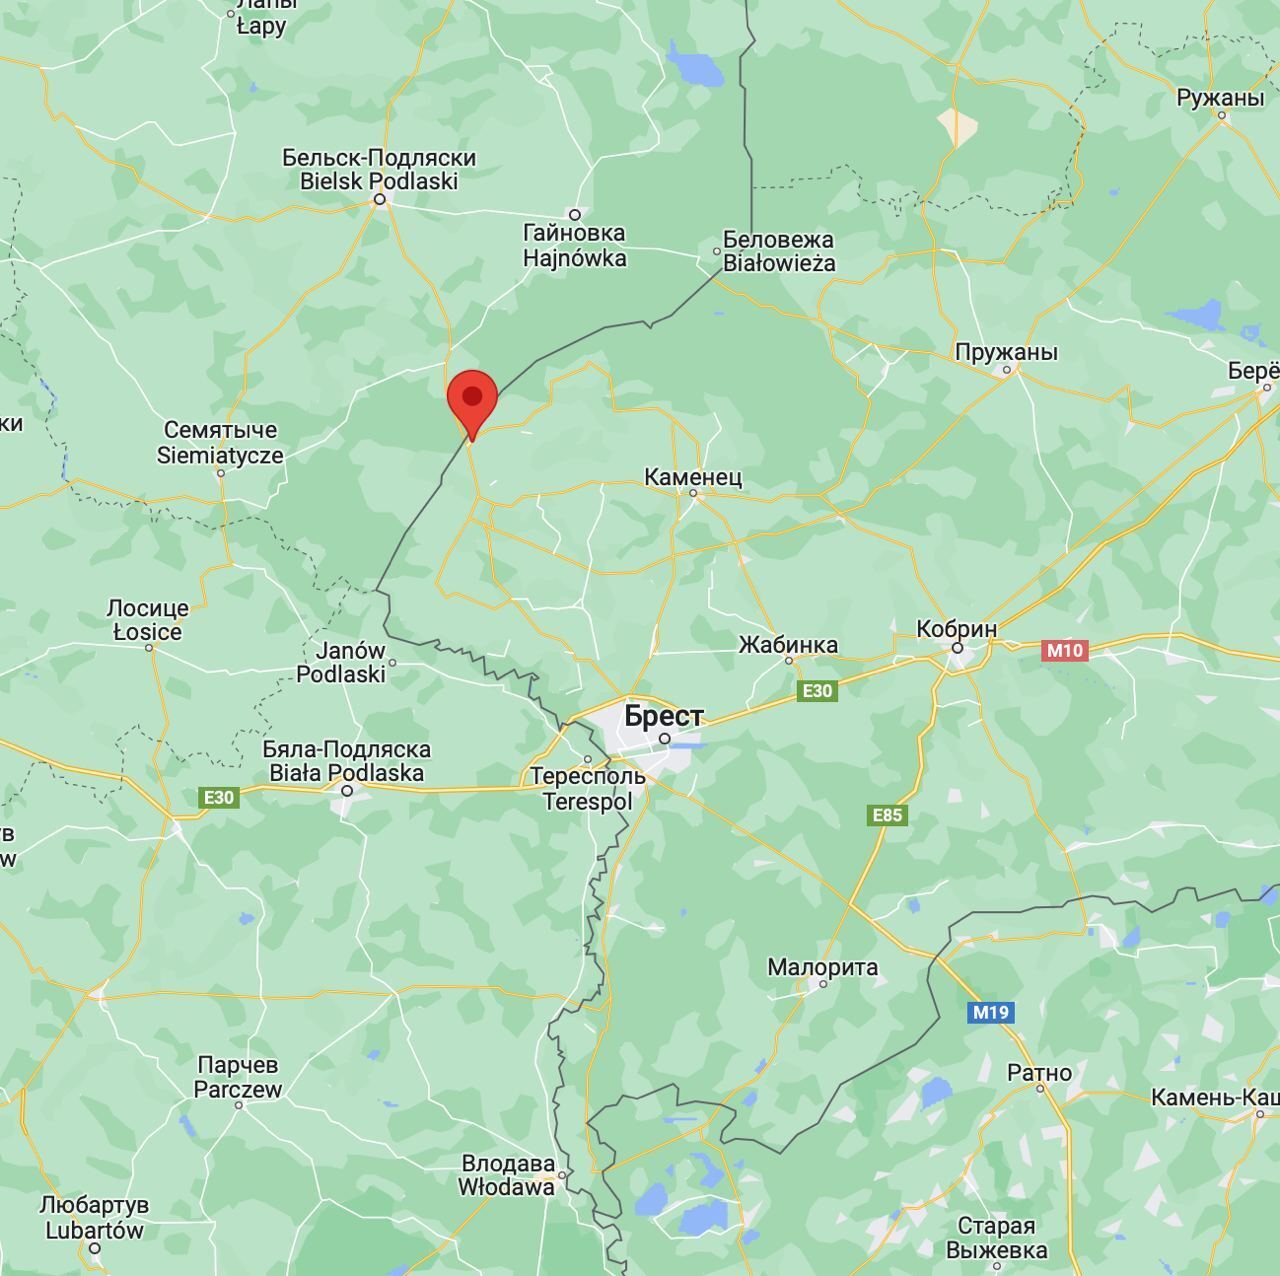 Найманців ПВК "Вагнер" помітили за 2 км від кордону з Польщею, спроба прориву вже була: що відбувається. Карта 